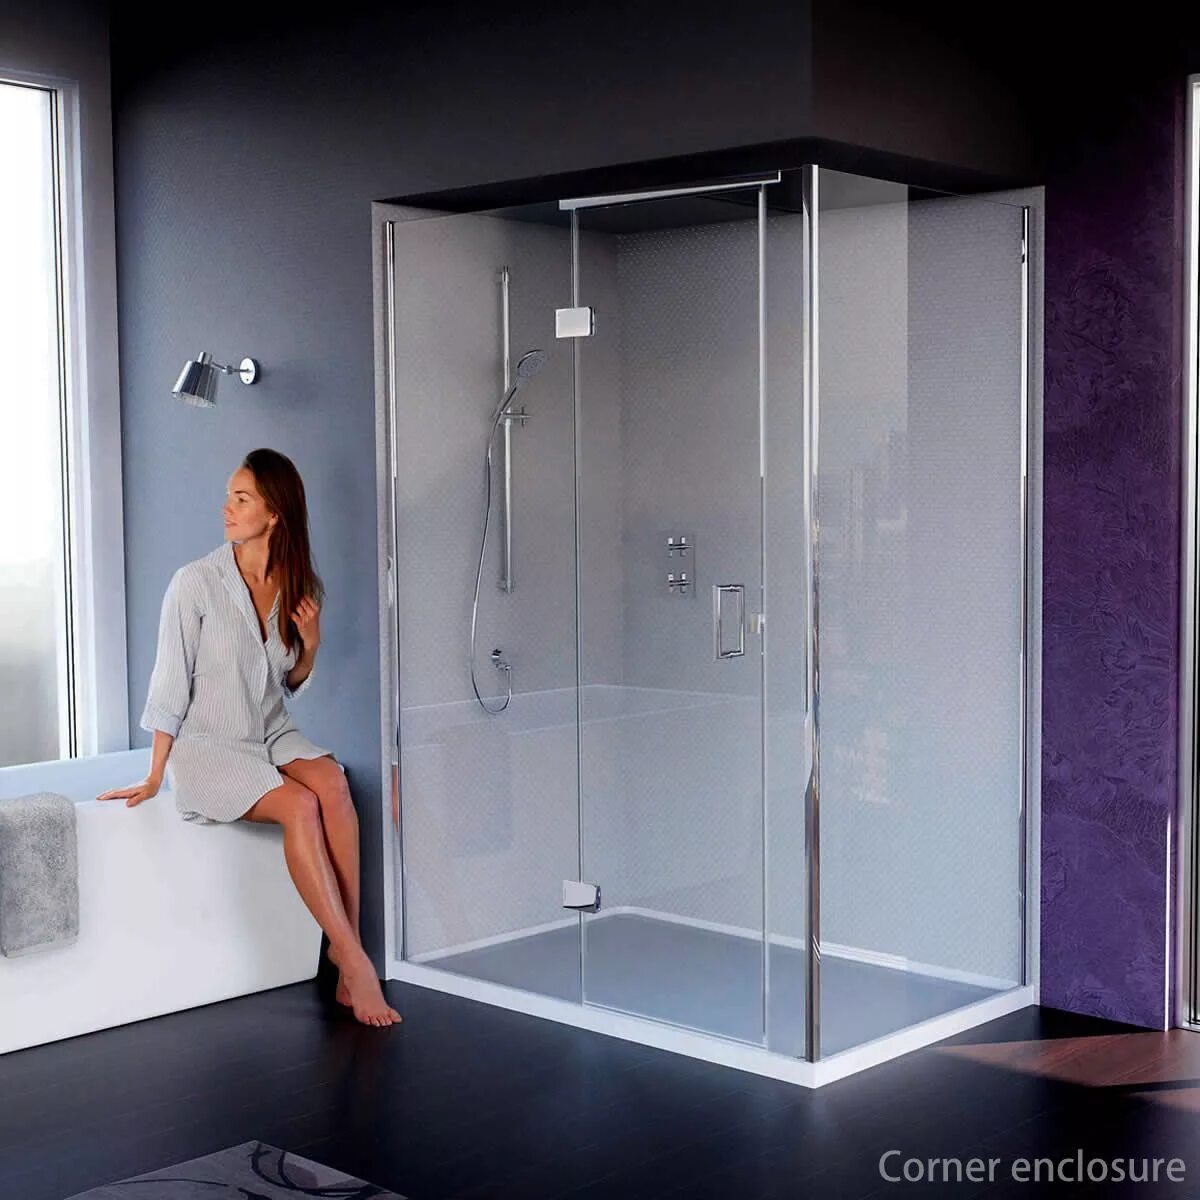 Собрать стеклянную душевую. Душевая кабина Shower Glass. Shower Enclosure душевая кабина. Душевая кабина Shower Glass комплект. Душевая кабина Glass 140x100.